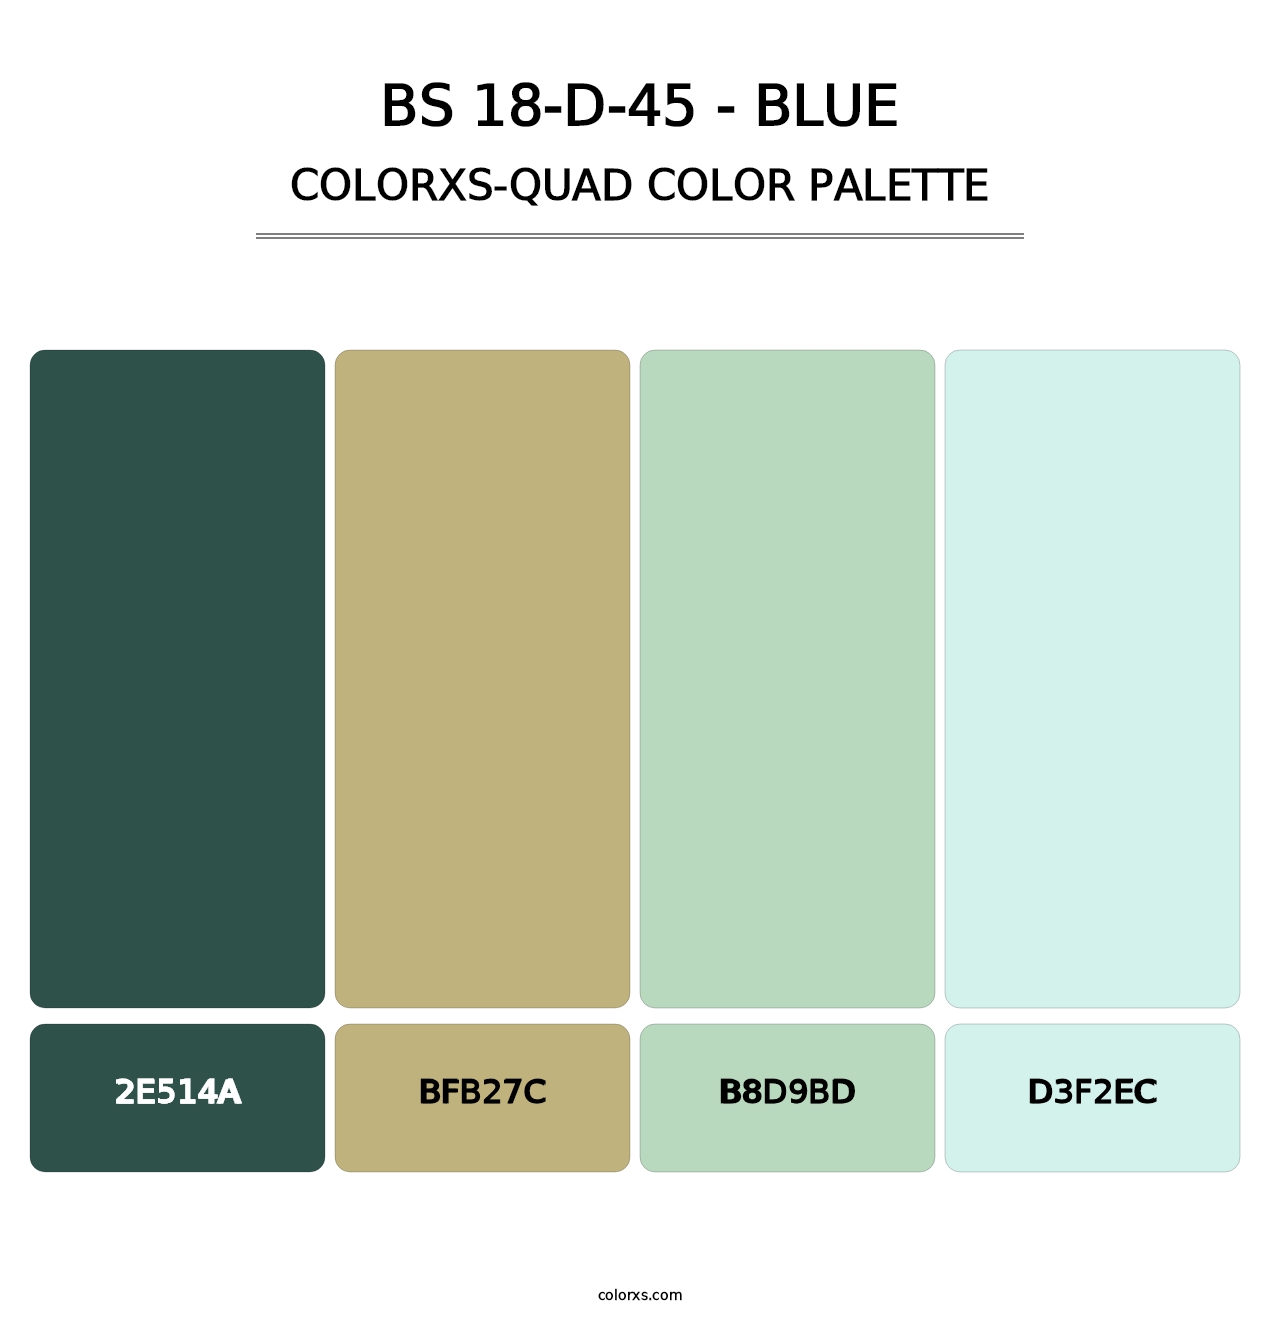 BS 18-D-45 - Blue - Colorxs Quad Palette